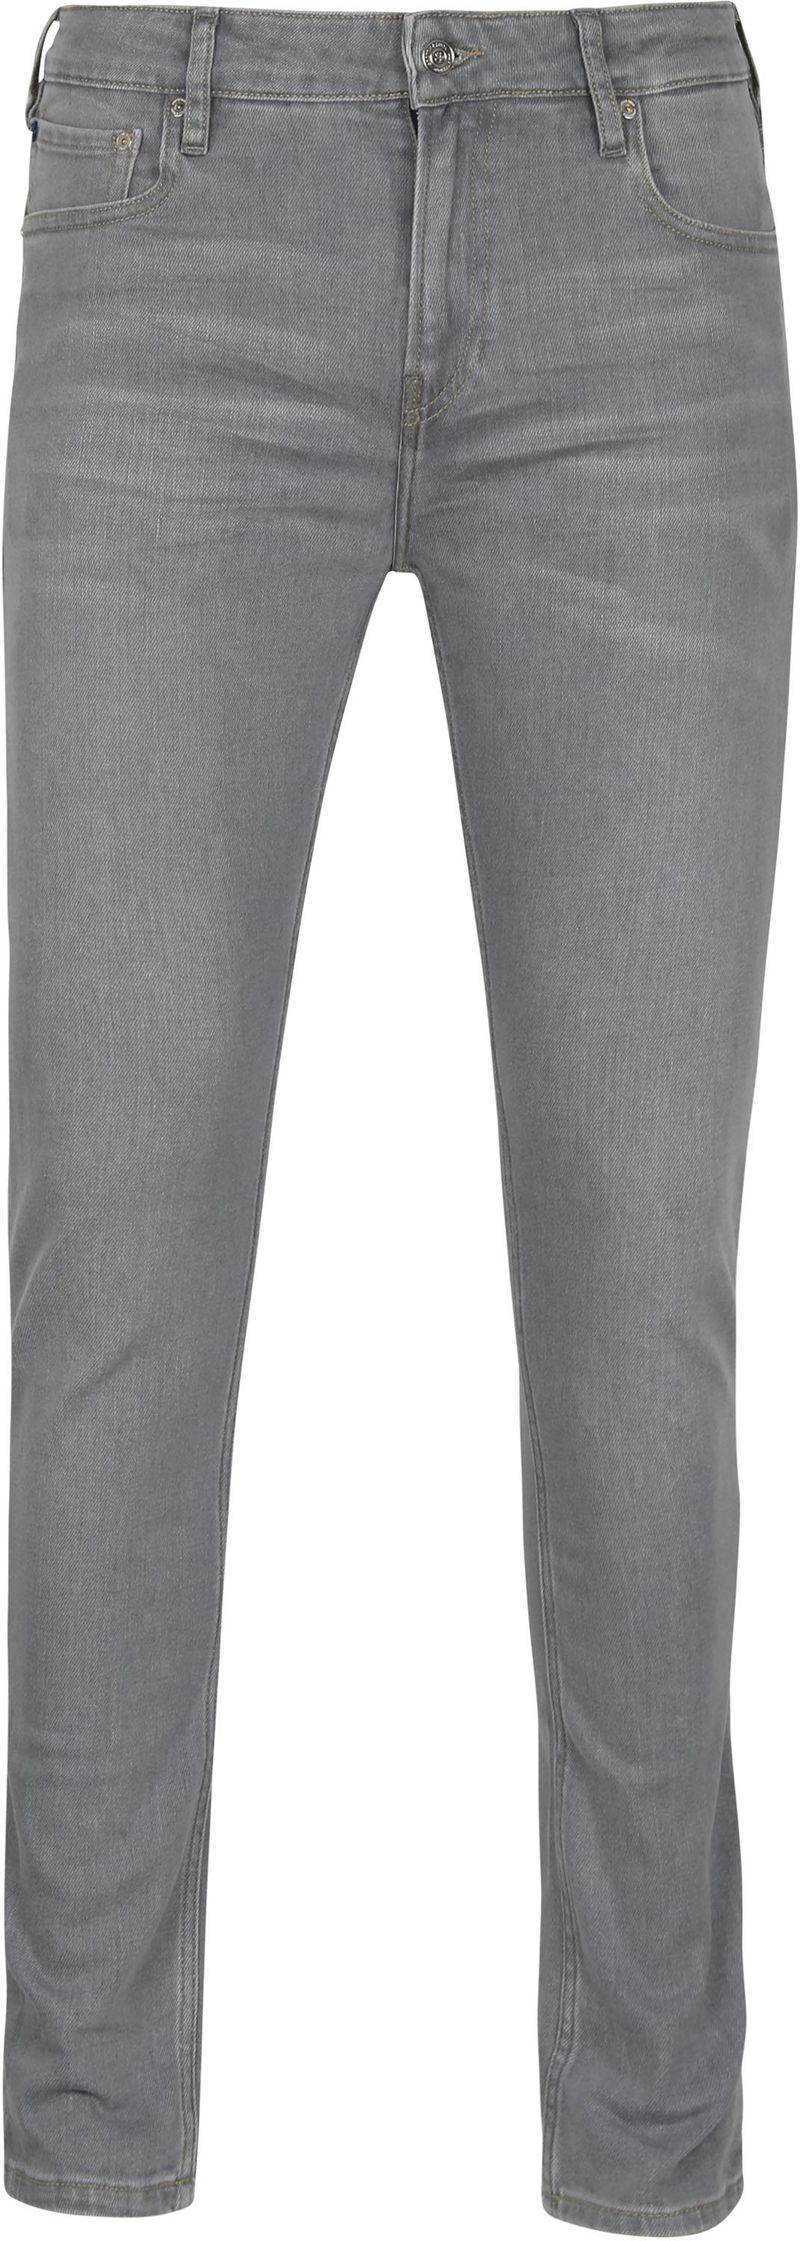 Scotch and Soda Skim Jeans Grau - Größe W 34 - L 30 günstig online kaufen